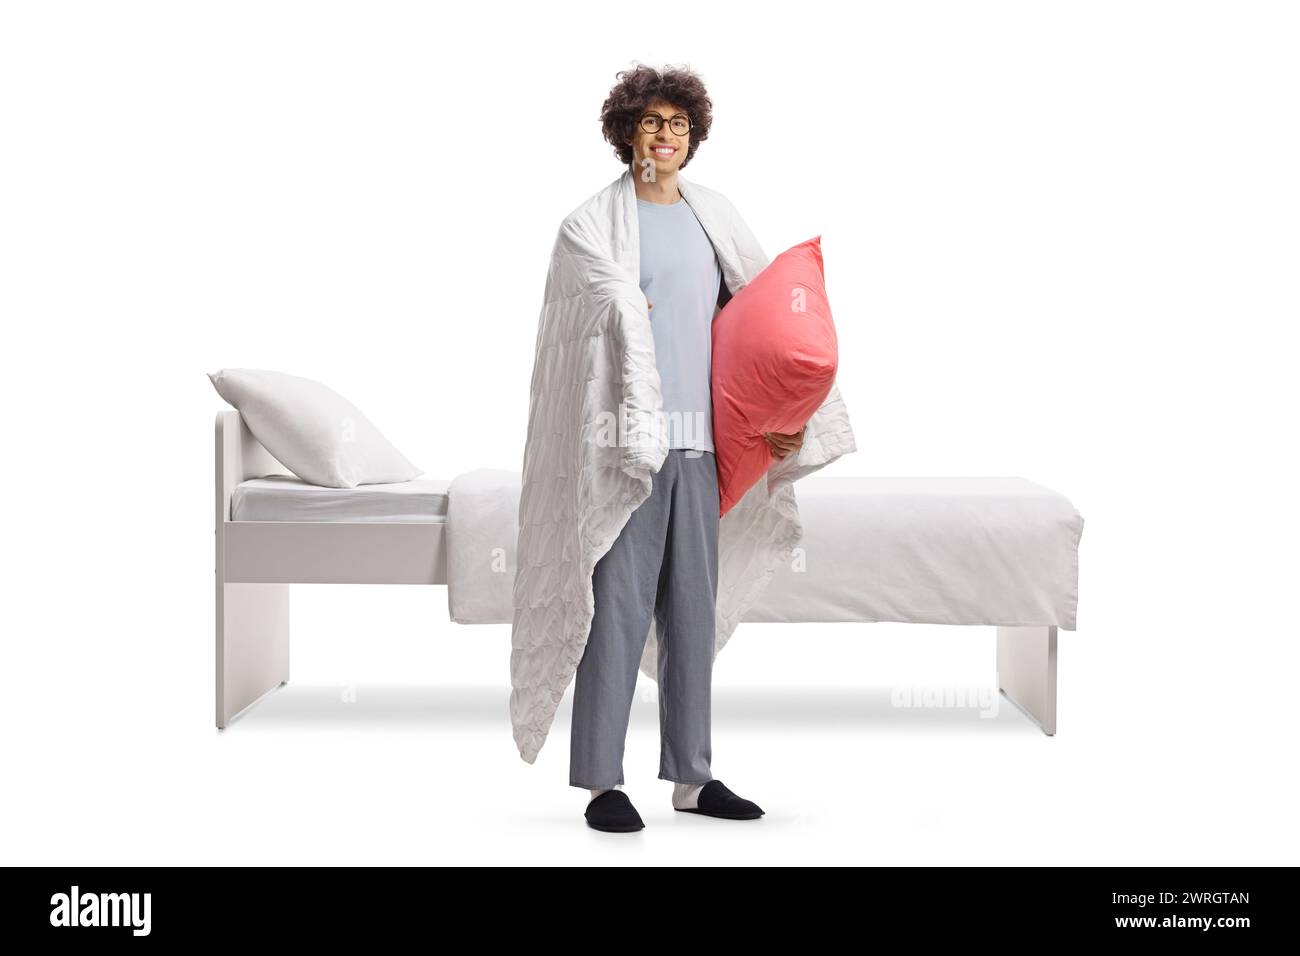 Jeune homme en pyjama enveloppé dans une couverture debout à côté d'un lit et tenant un oreiller isolé sur fond blanc Banque D'Images